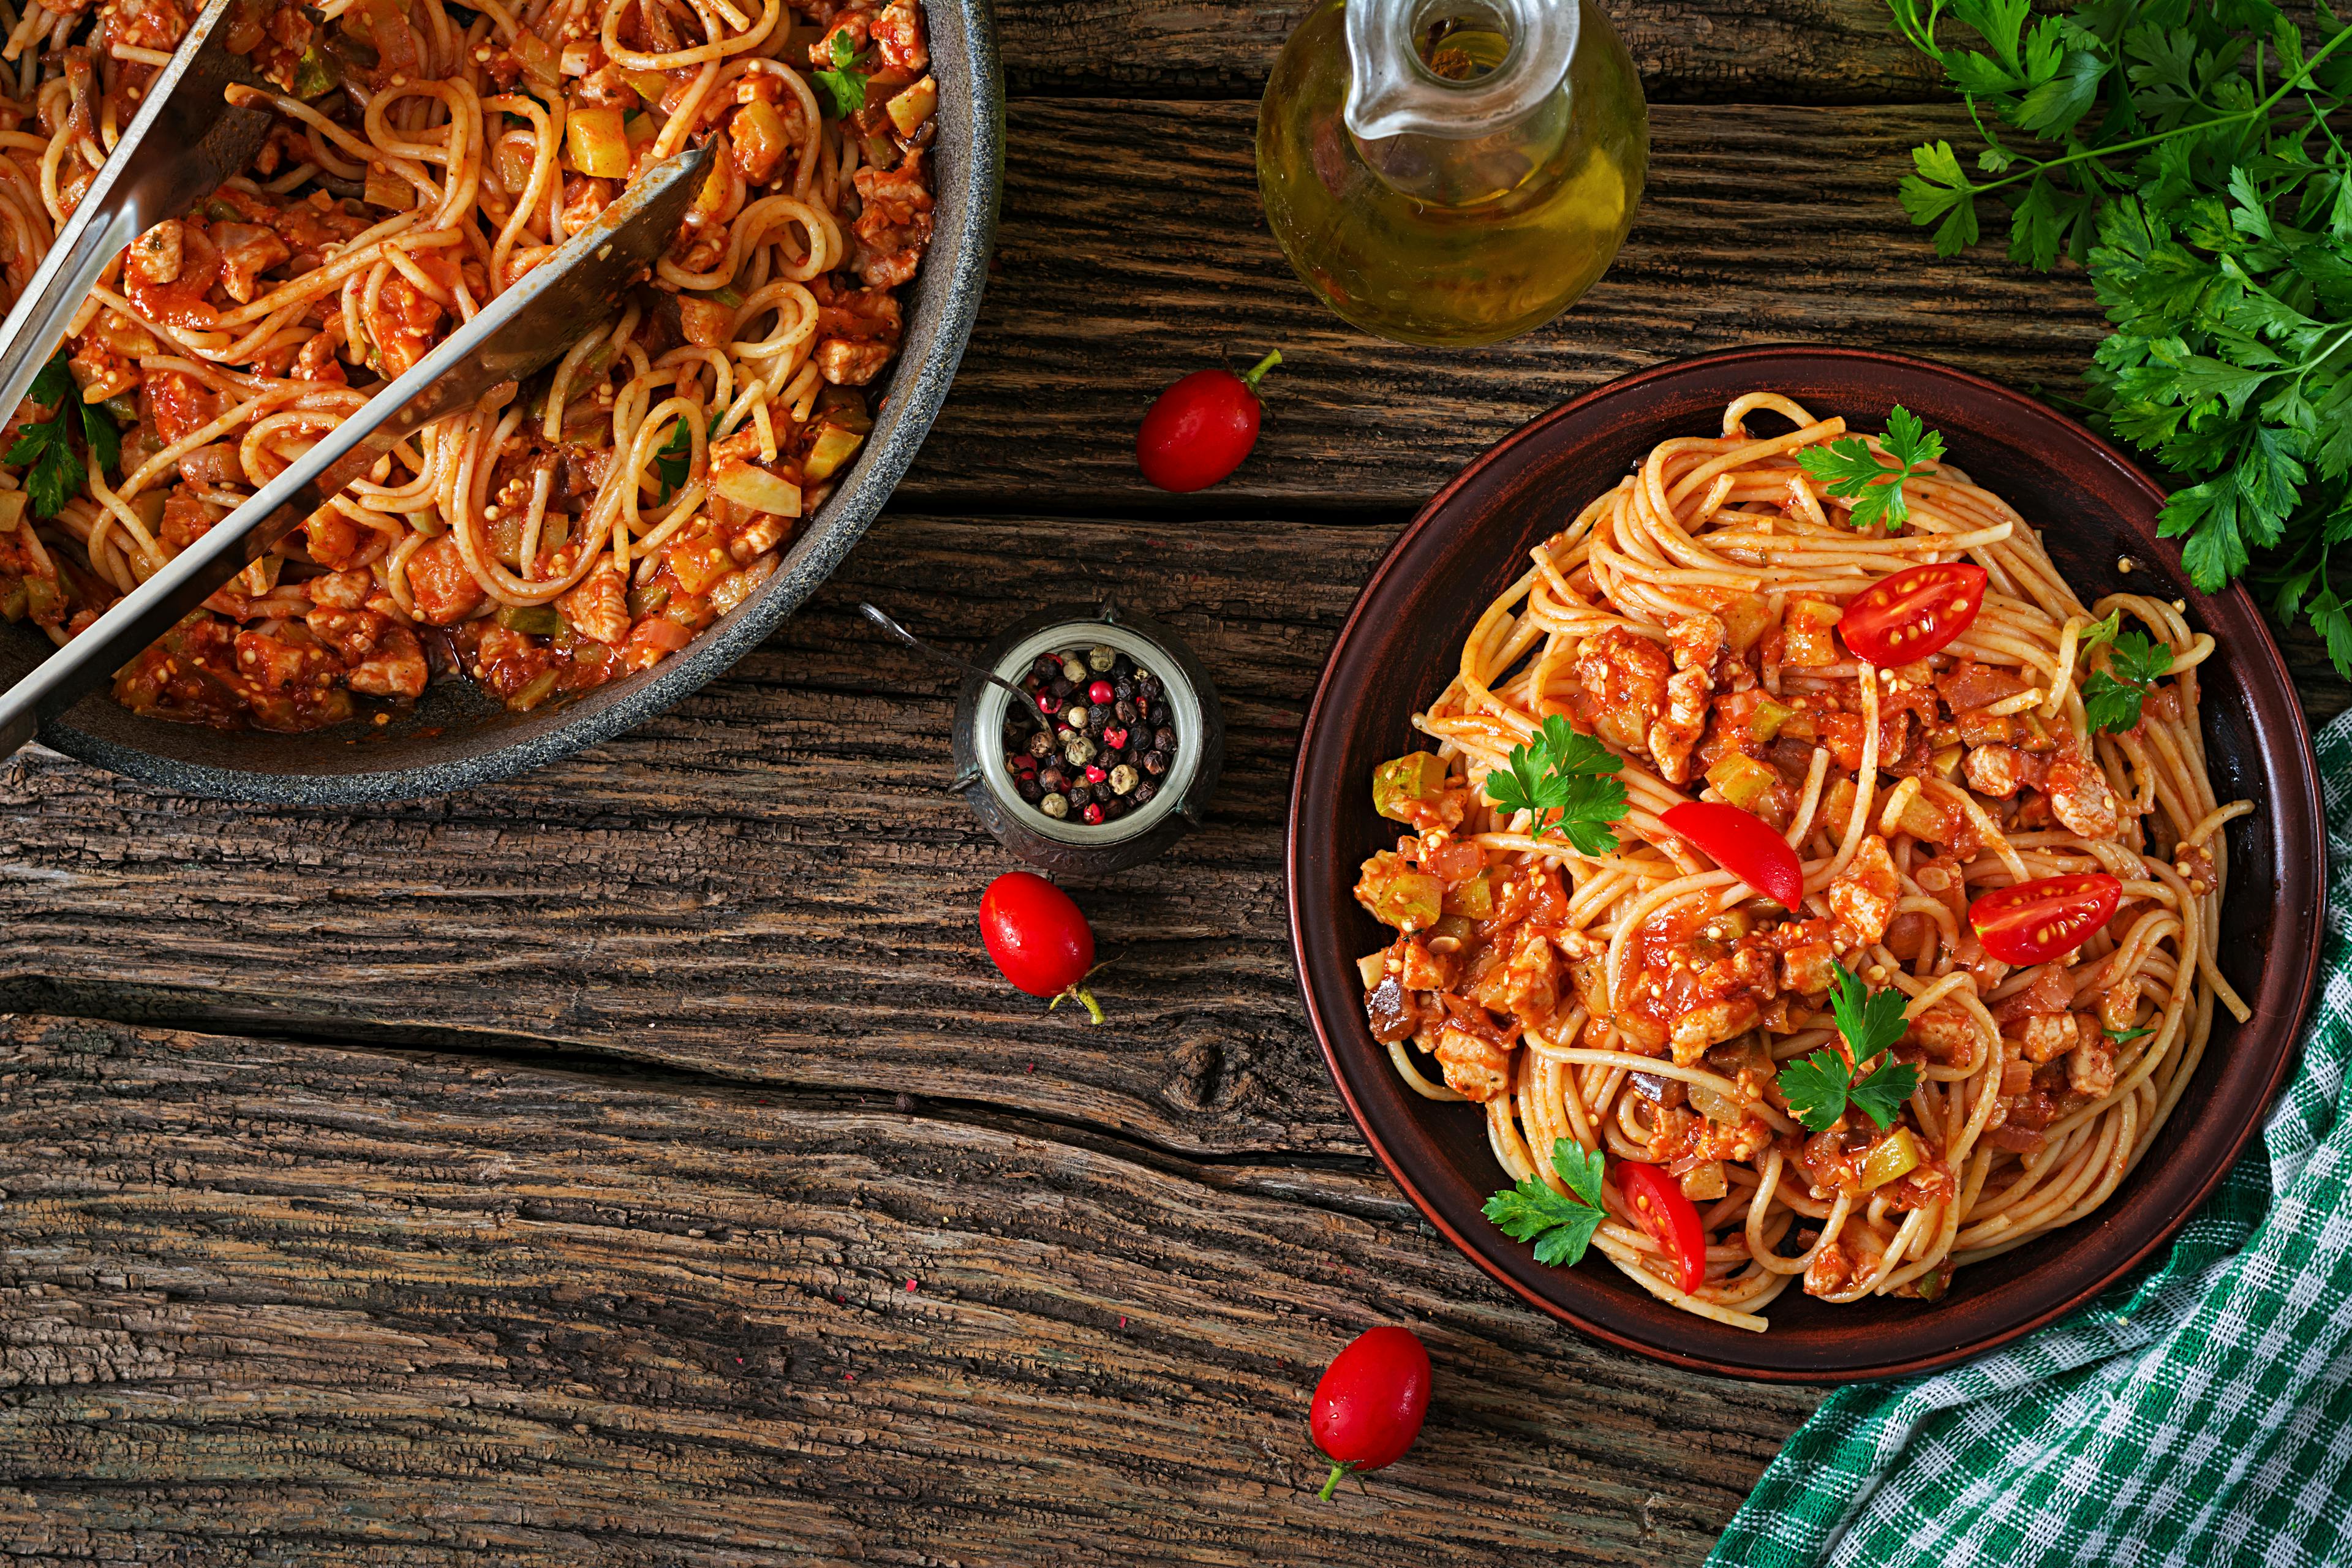 Plate with spaghetti alla bolognese